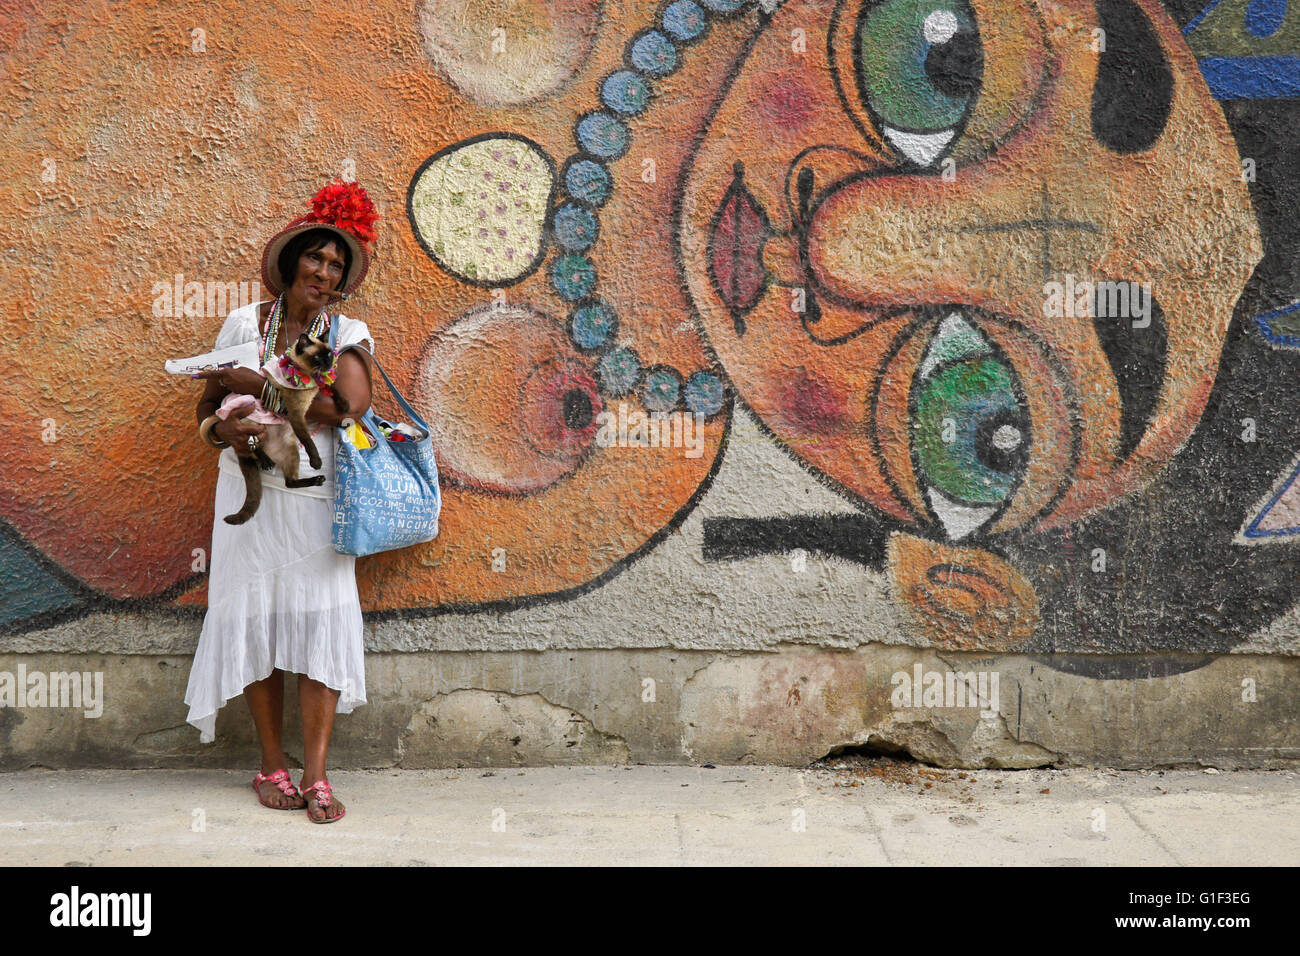 Zigarre rauchende Frau und ihre Katze vor Straße Wandbild, Havanna, Kuba Stockfoto